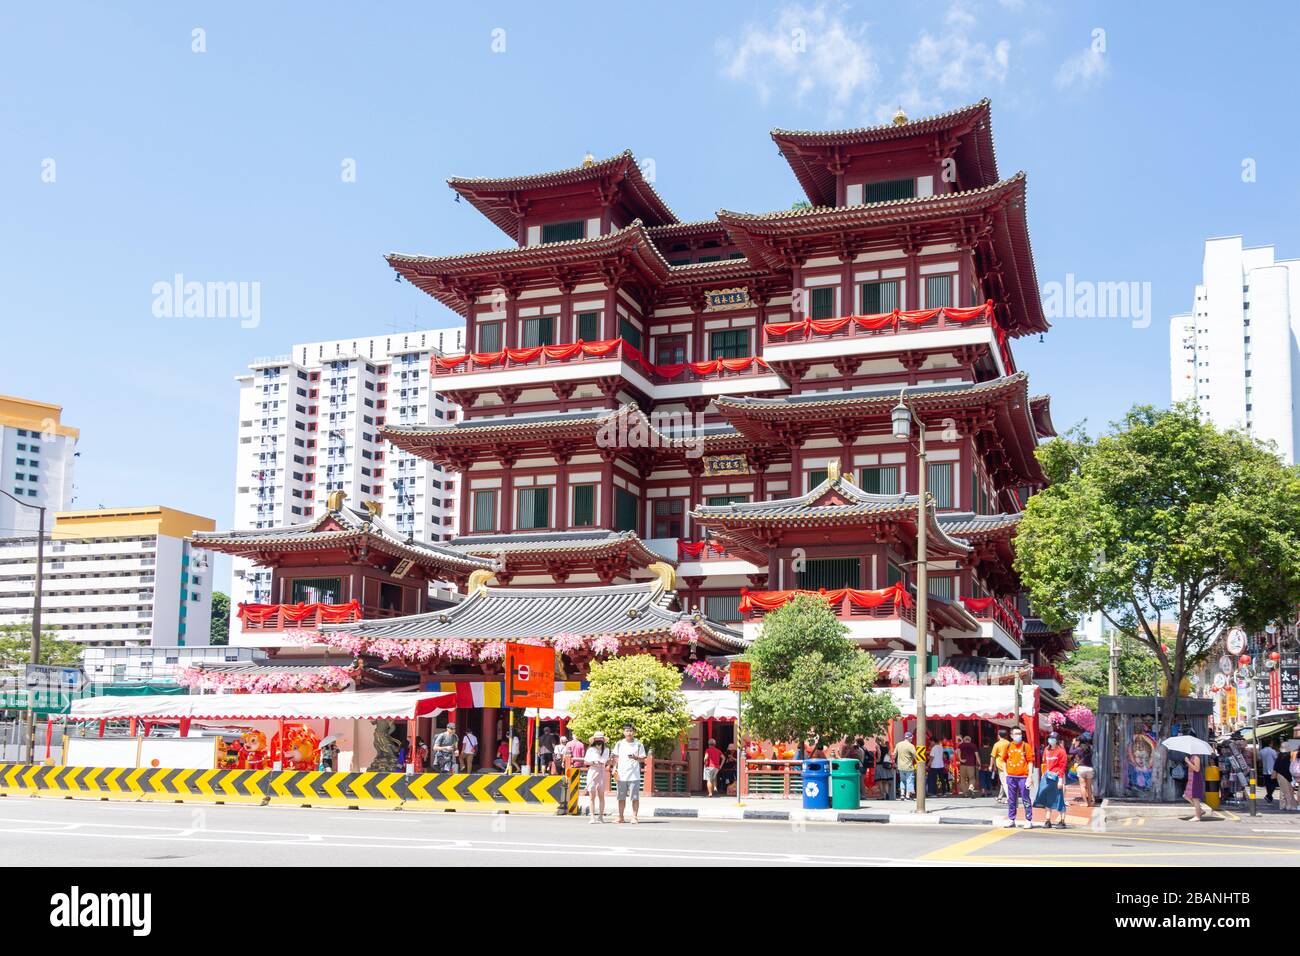 Temple relatique de Buddha Tooth, South Bridge Road, Chinatown, Outram District, Central Area, île de Singapour (Pulau Ujong), Singapour Banque D'Images